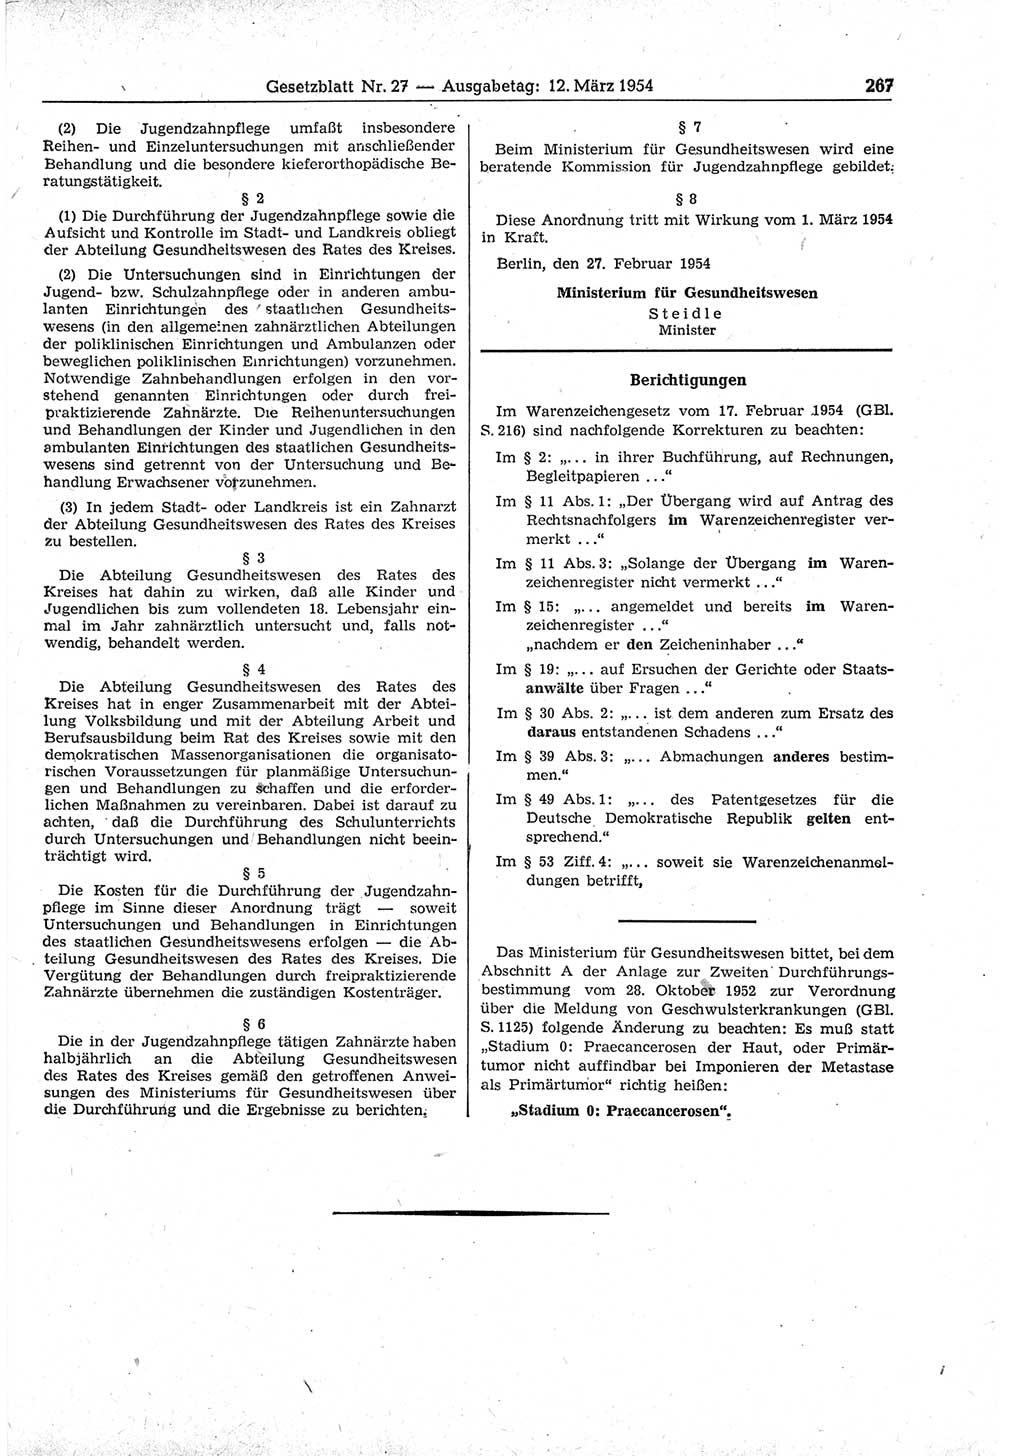 Gesetzblatt (GBl.) der Deutschen Demokratischen Republik (DDR) 1954, Seite 267 (GBl. DDR 1954, S. 267)